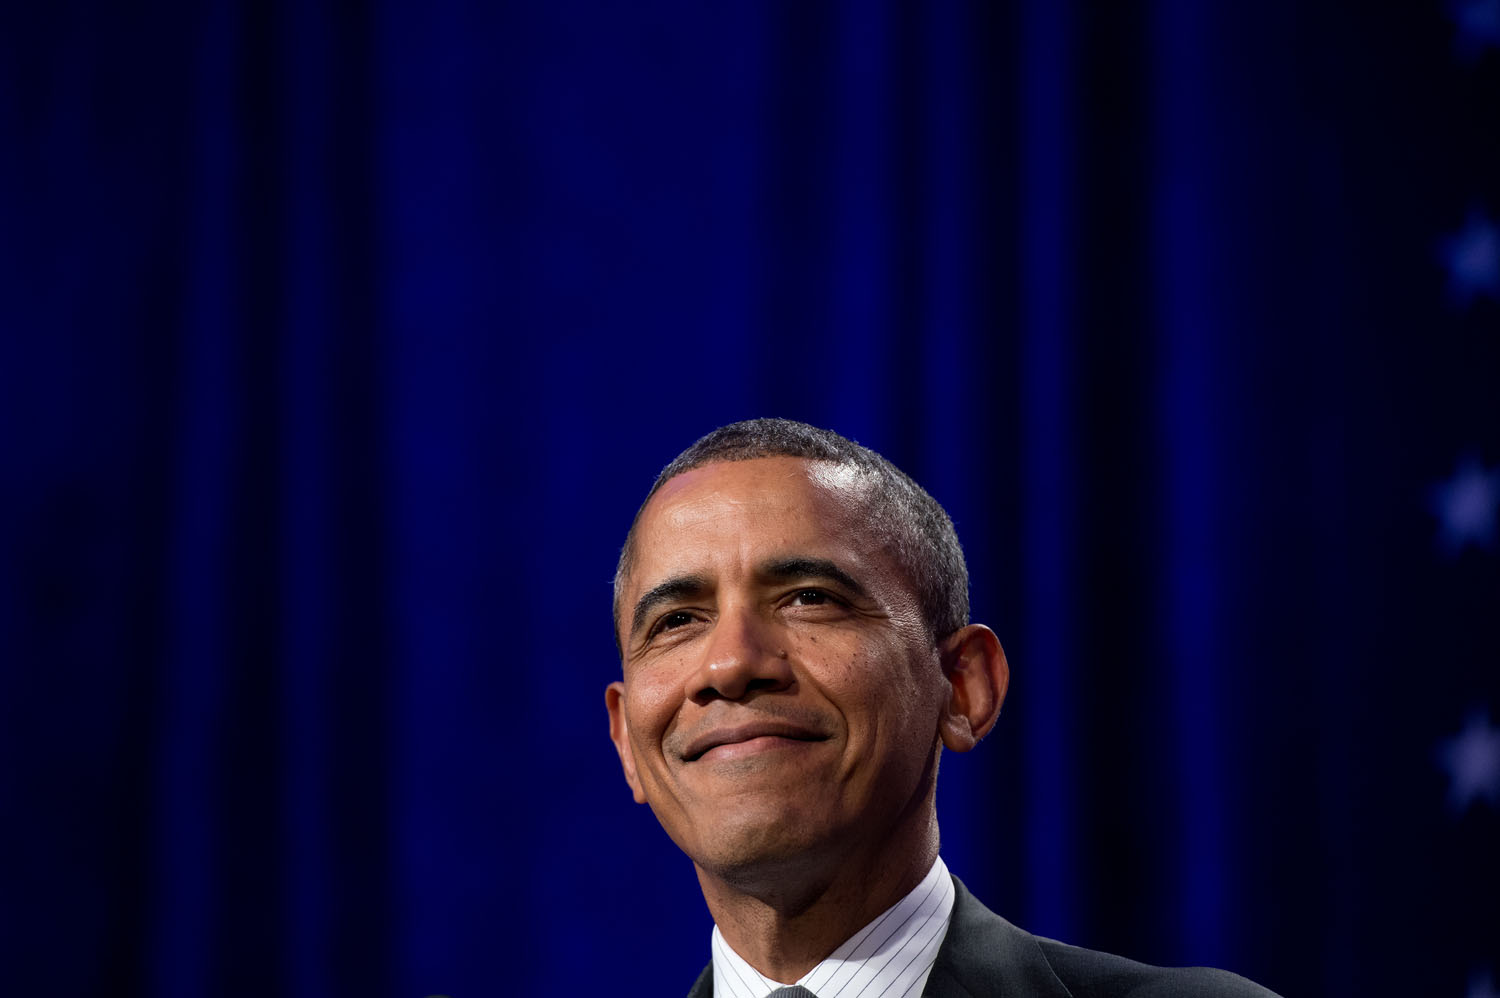 U.S. President Barack Obama addresses the National Organizing summit in Washington on Feb. 25, 2014.